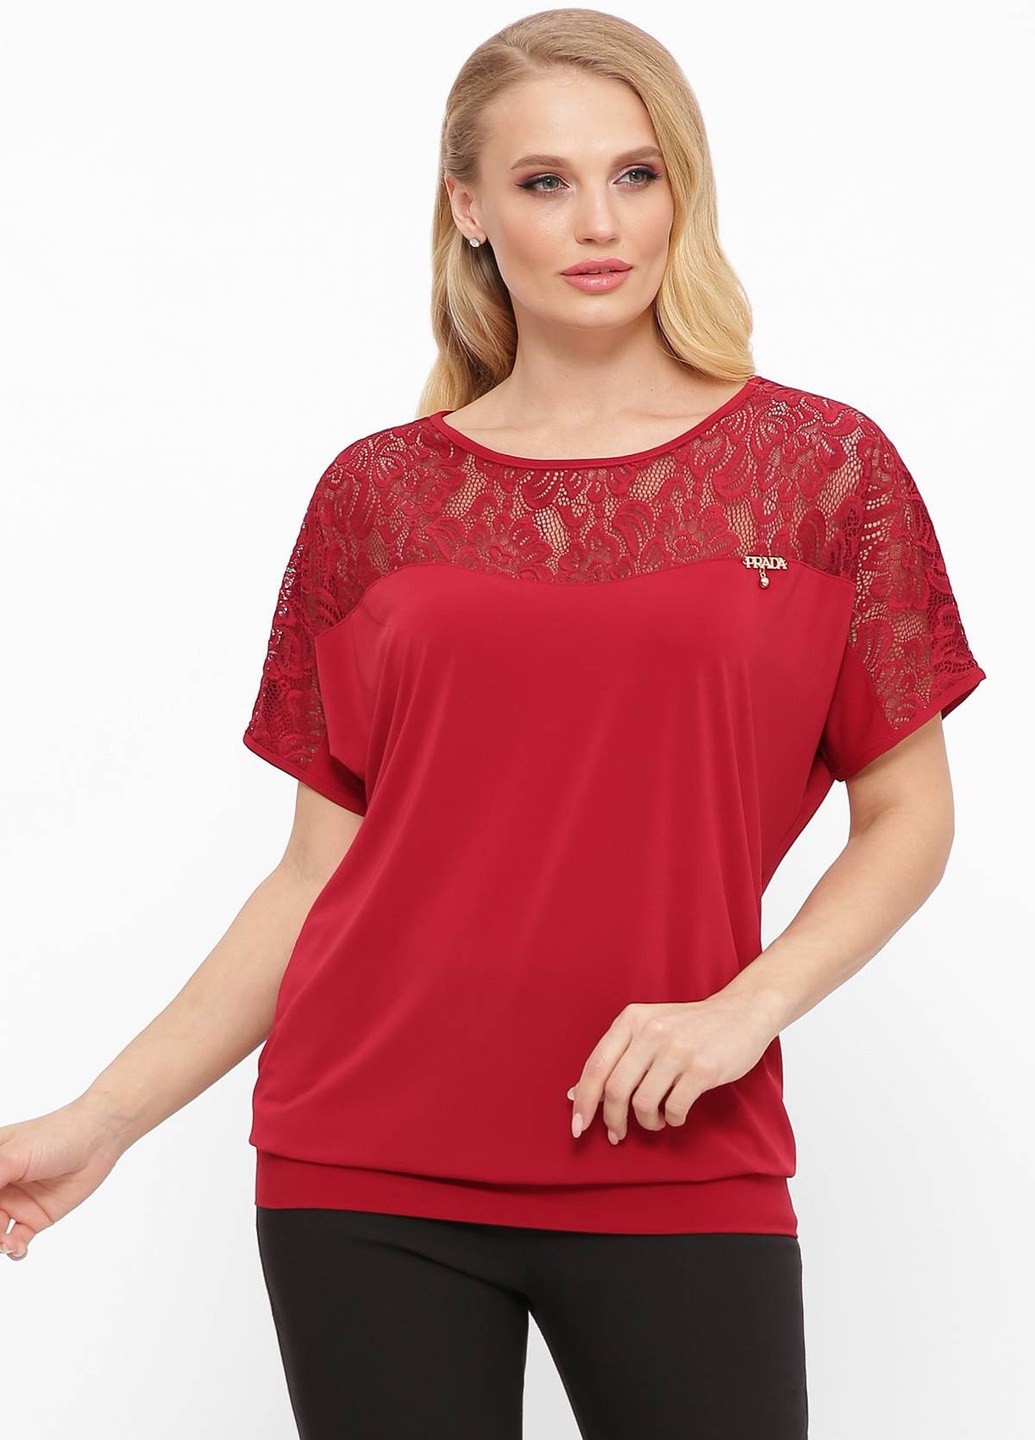 Бордовая летняя футболка с гипюровой кокеткой шон бордо Tatiana